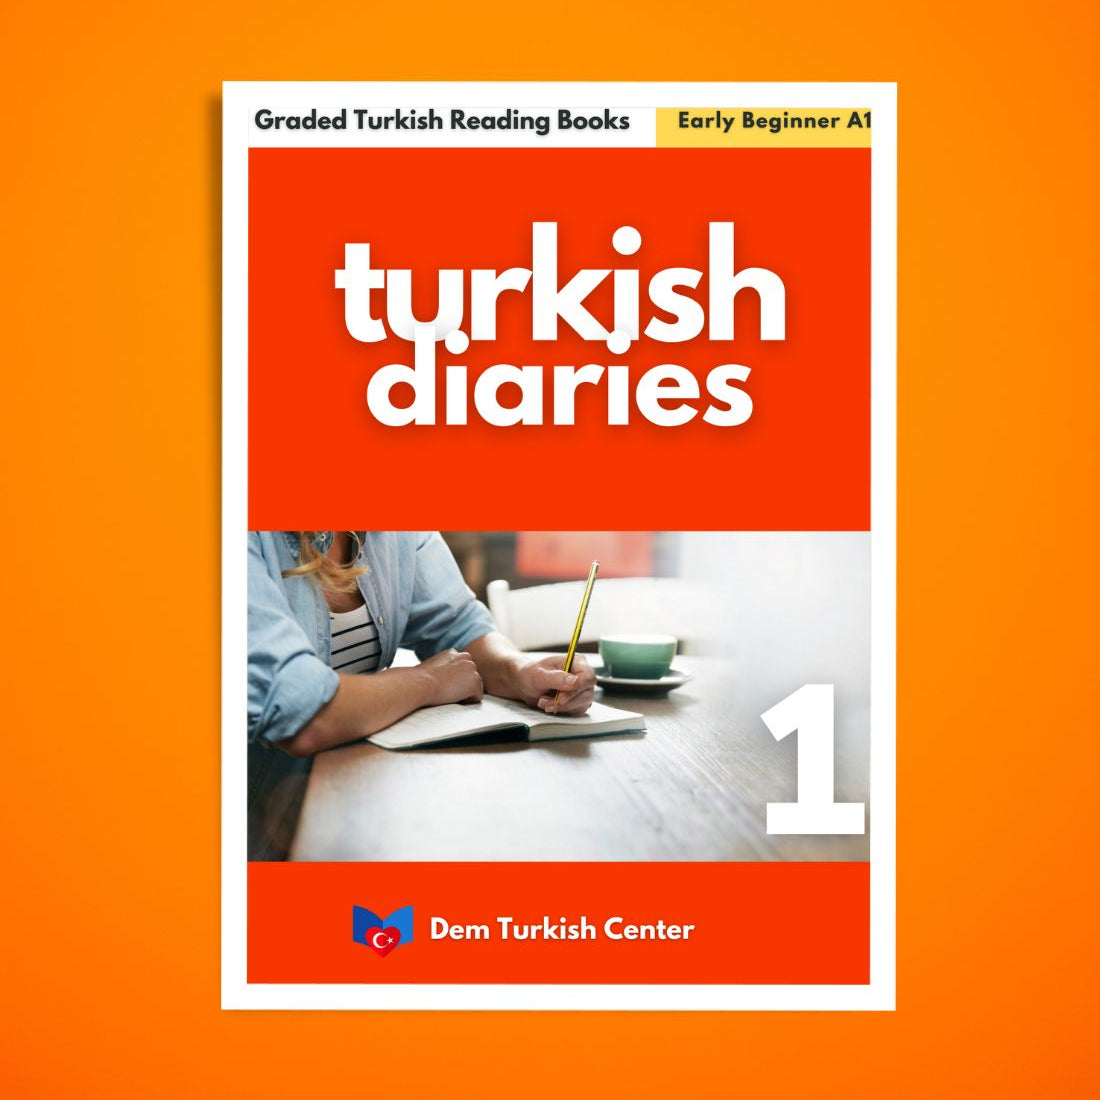 turkish books - turkish diaries a1 pdf